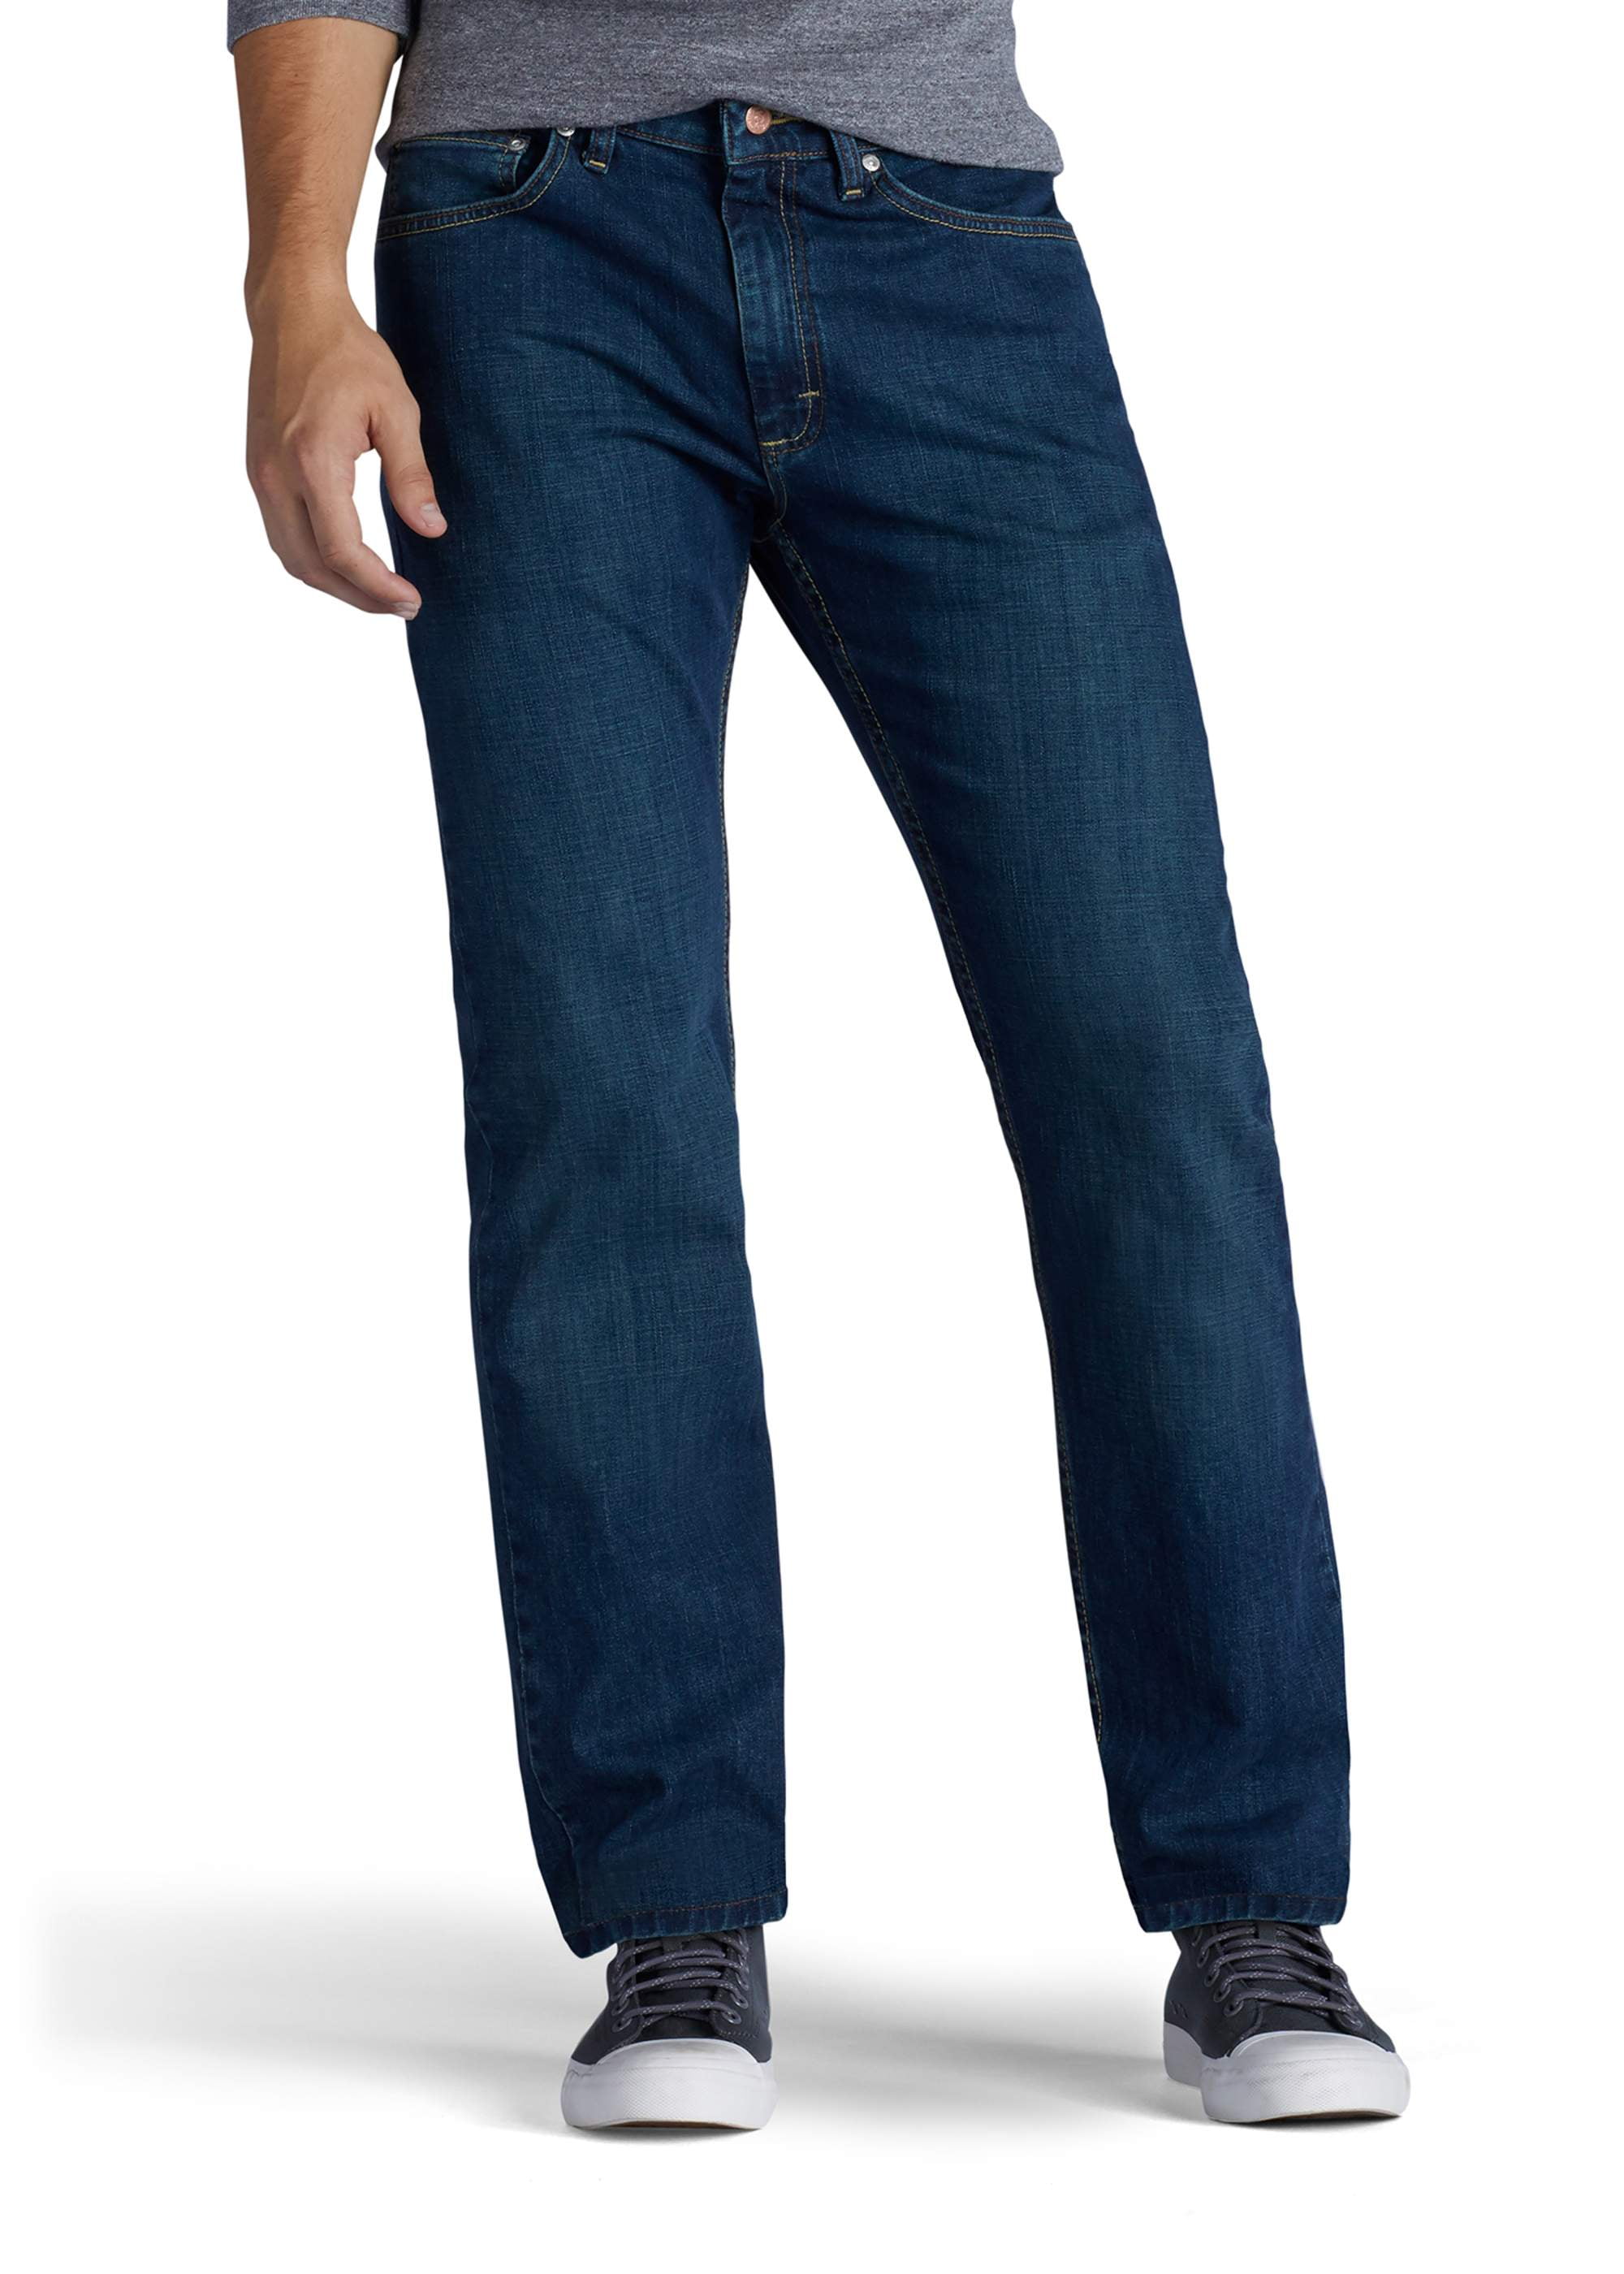 Lee Men's Premium Select Classic Fit Jeans